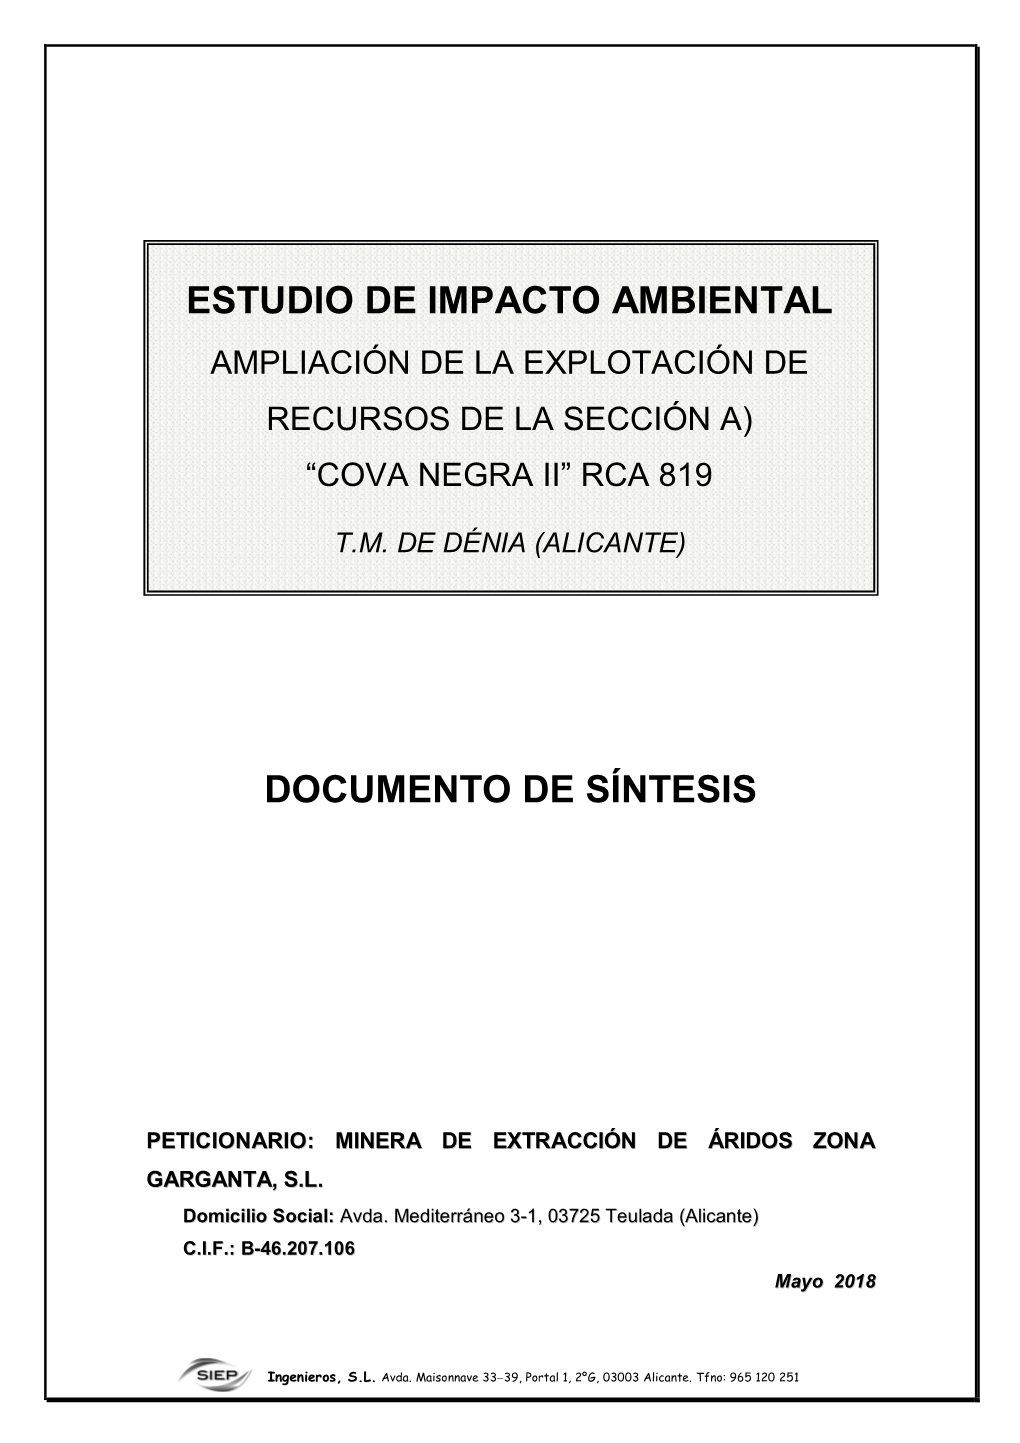 Documento De Síntesis Estudio De Impacto Ambiental